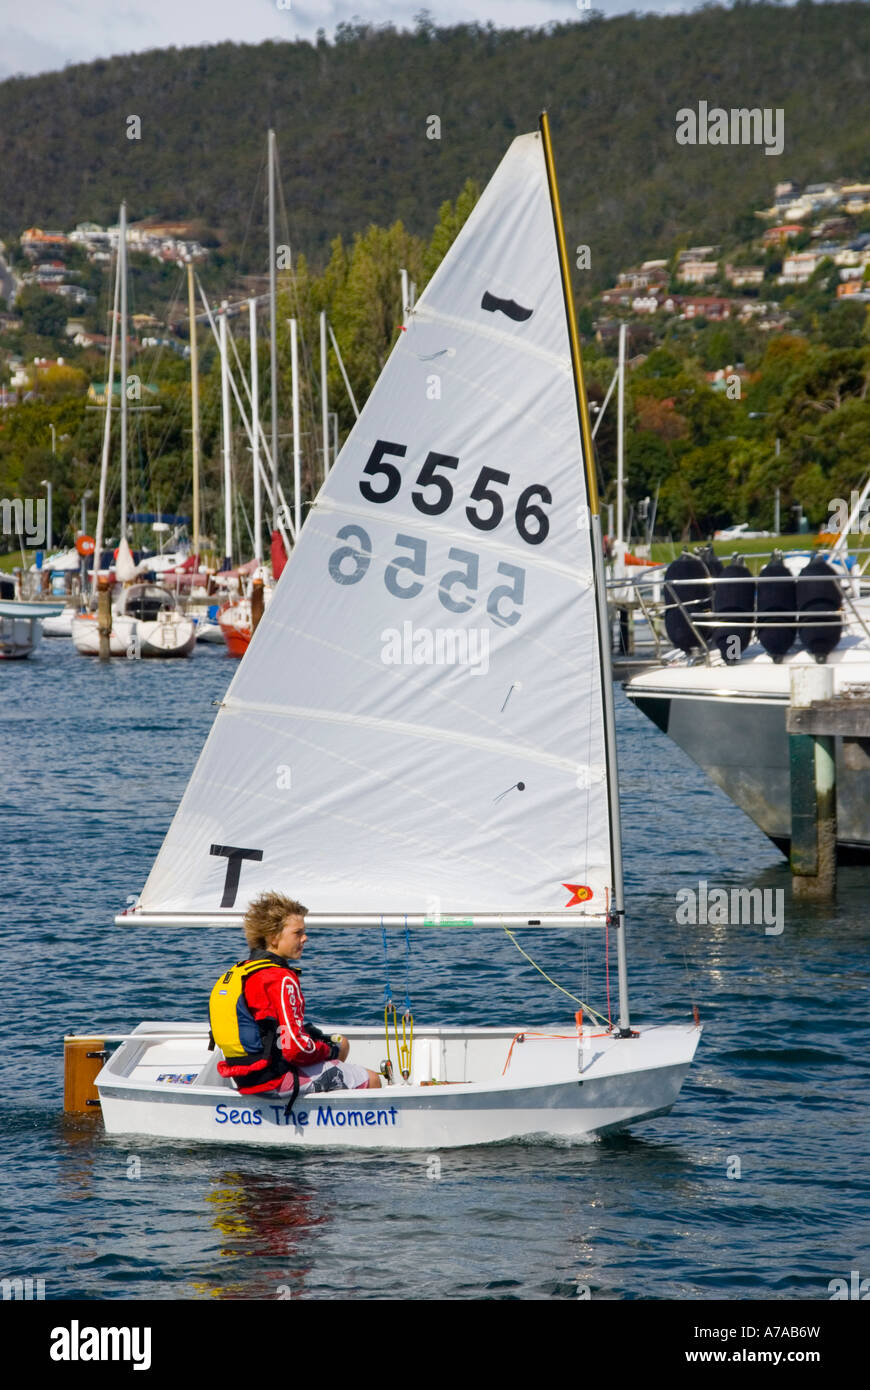 A young boy sailing a Sabot dinghy Stock Ph   oto - Alamy